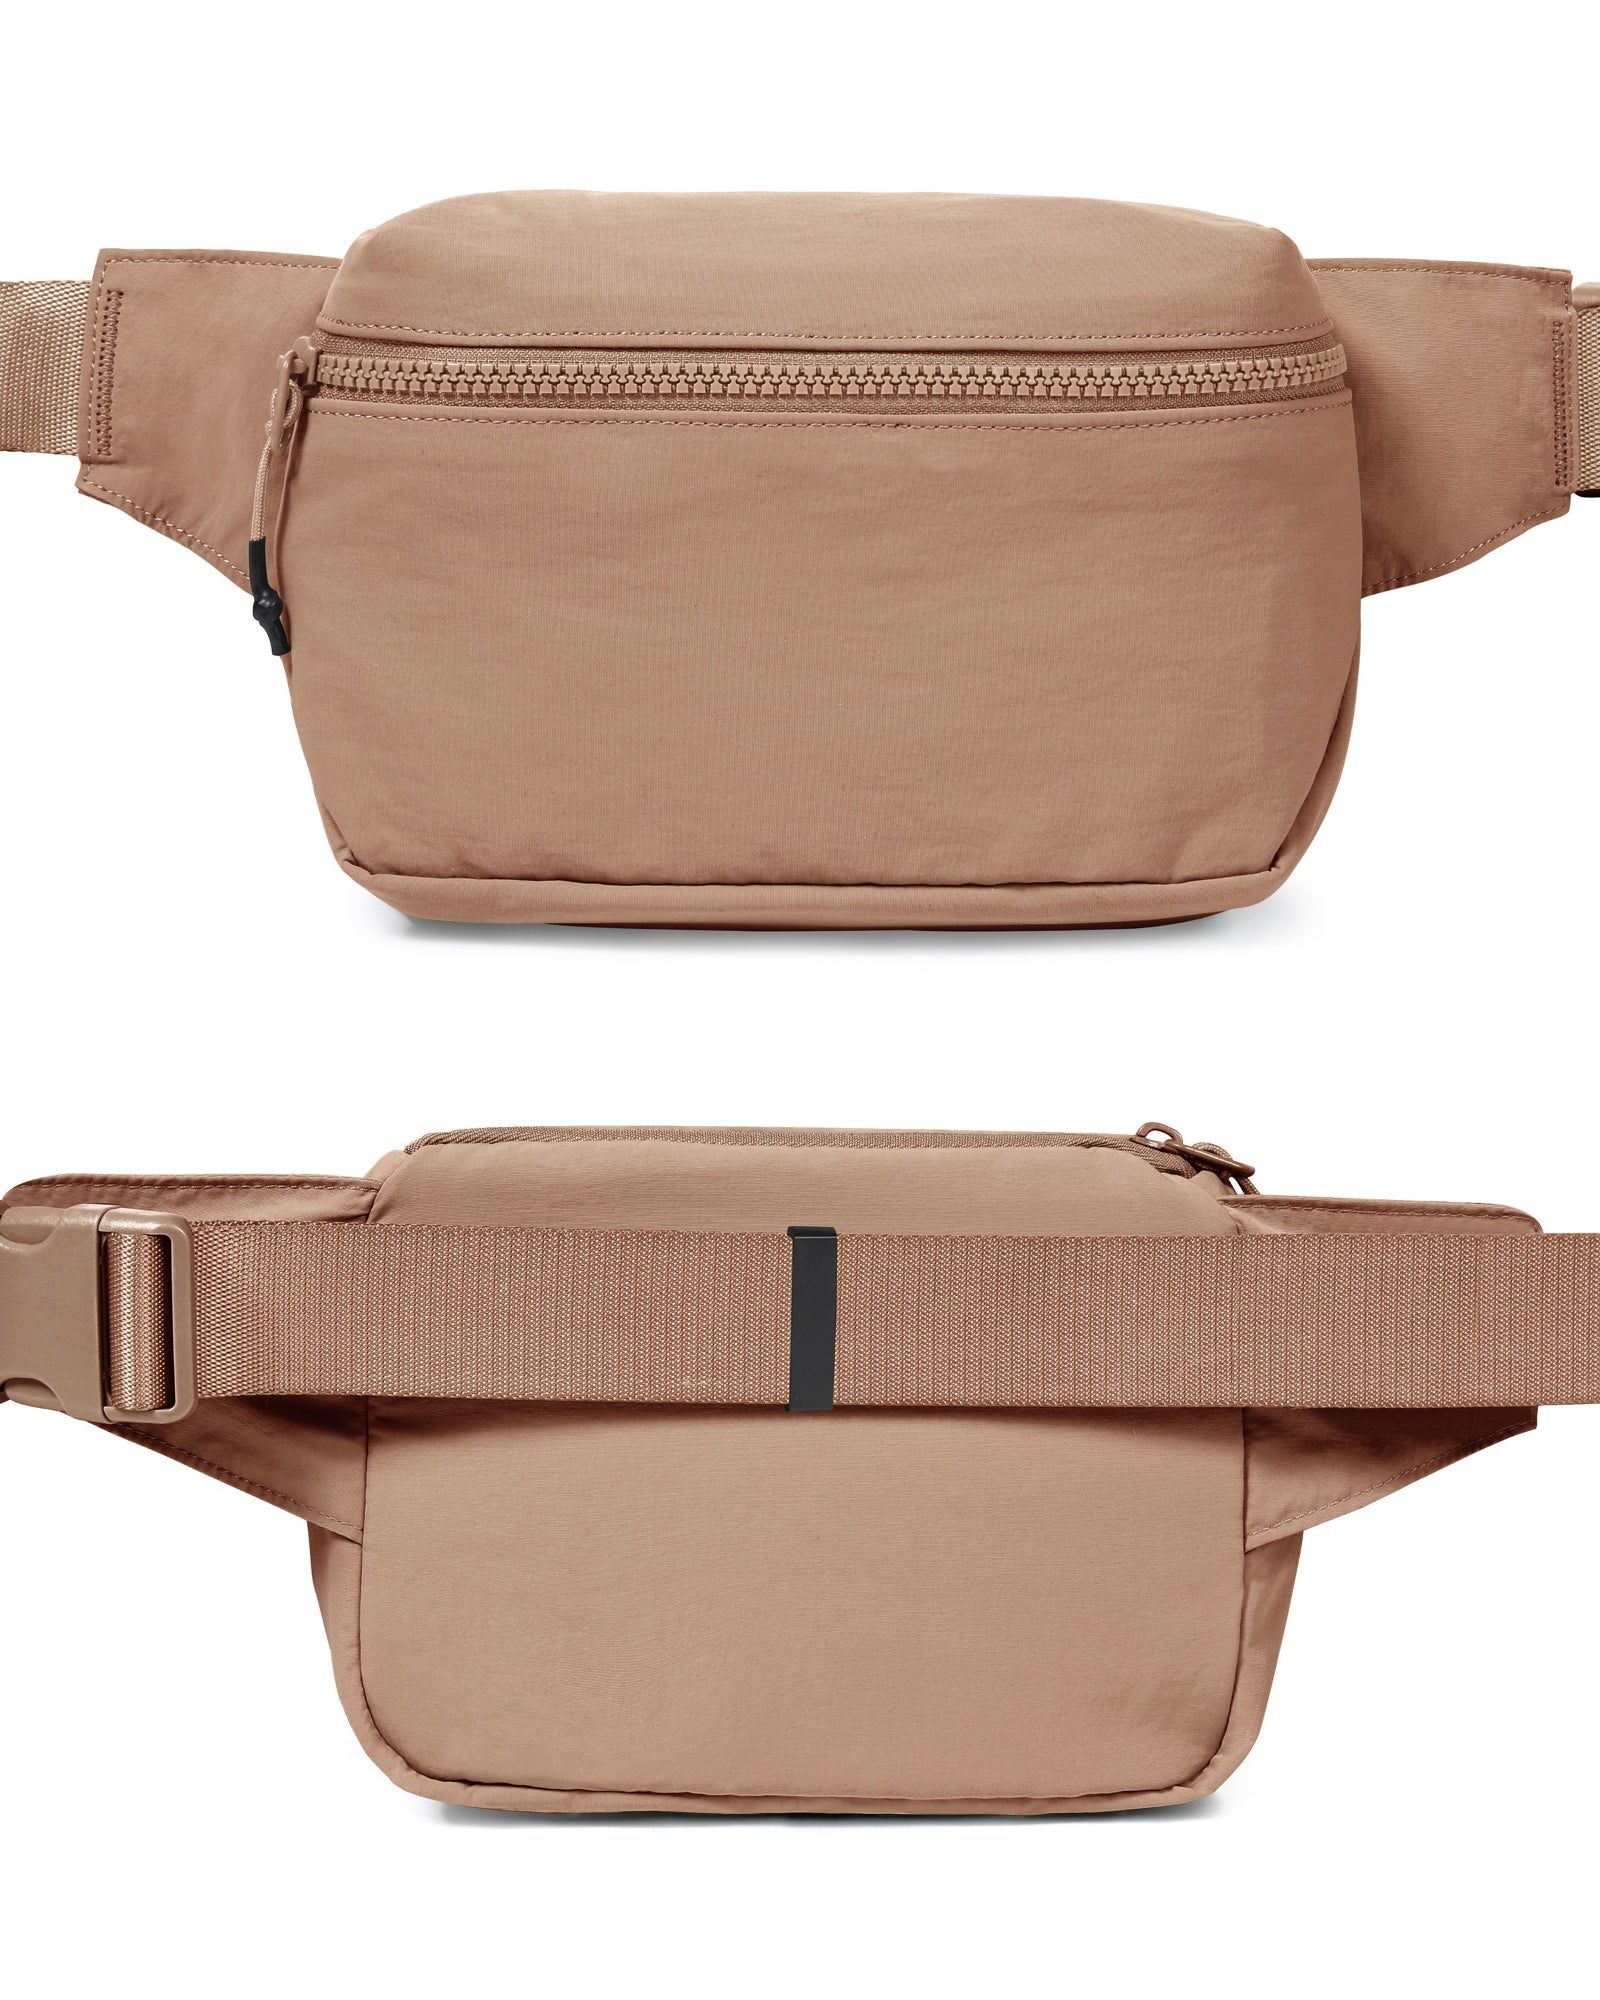 2L Belt Bag with Adjustable Strap - ododos